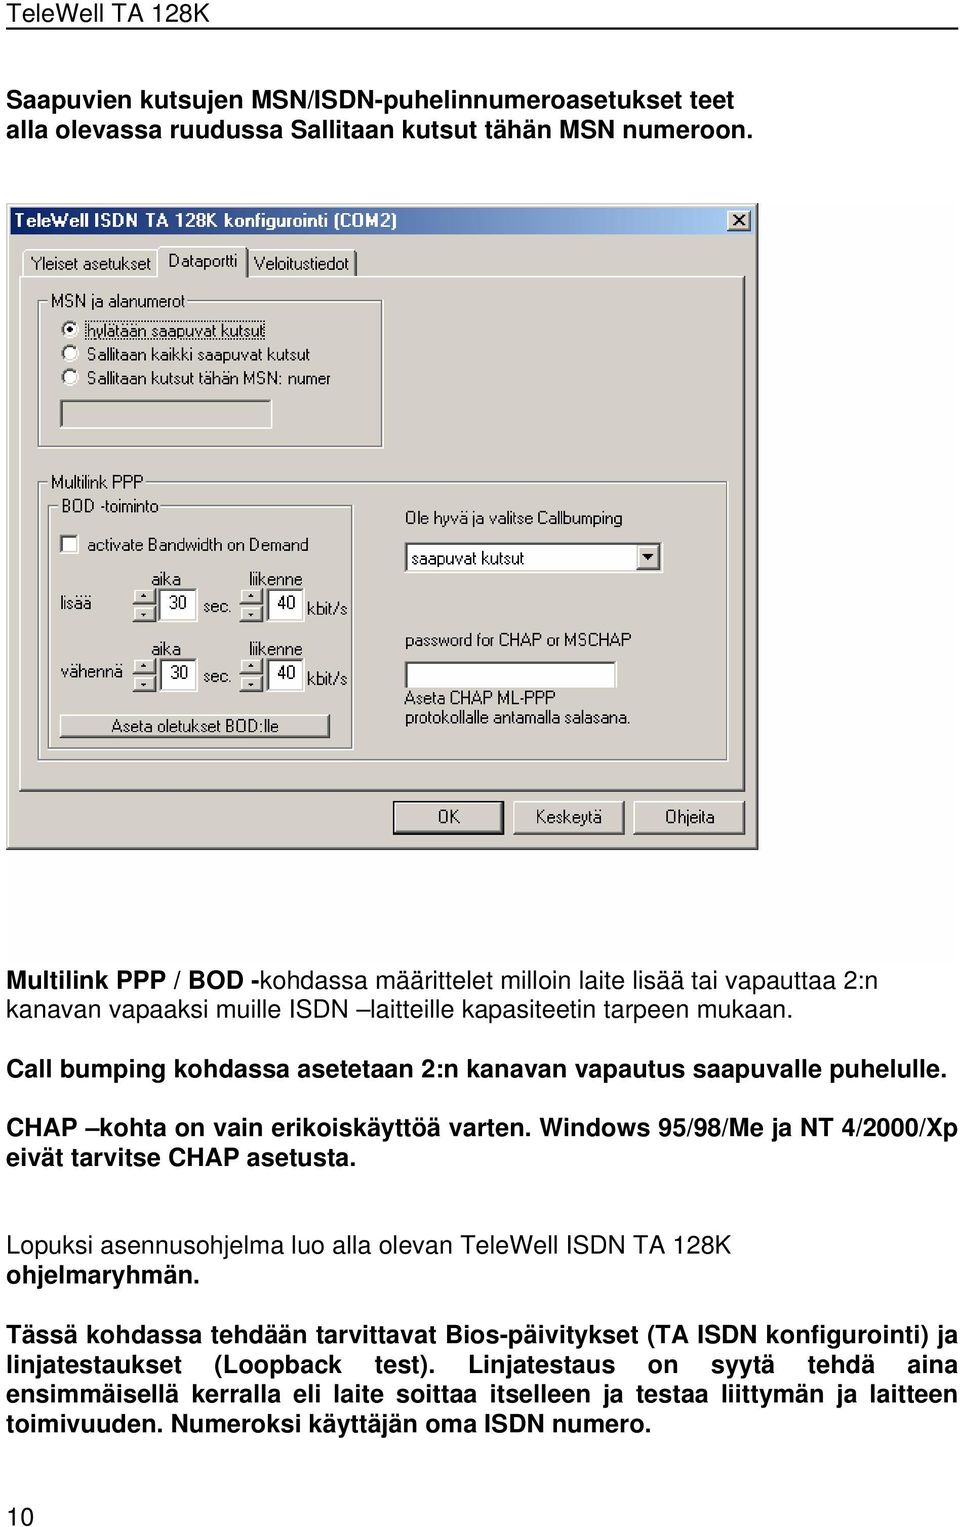 Call bumping kohdassa asetetaan 2:n kanavan vapautus saapuvalle puhelulle. CHAP kohta on vain erikoiskäyttöä varten. Windows 95/98/Me ja NT 4/2000/Xp eivät tarvitse CHAP asetusta.